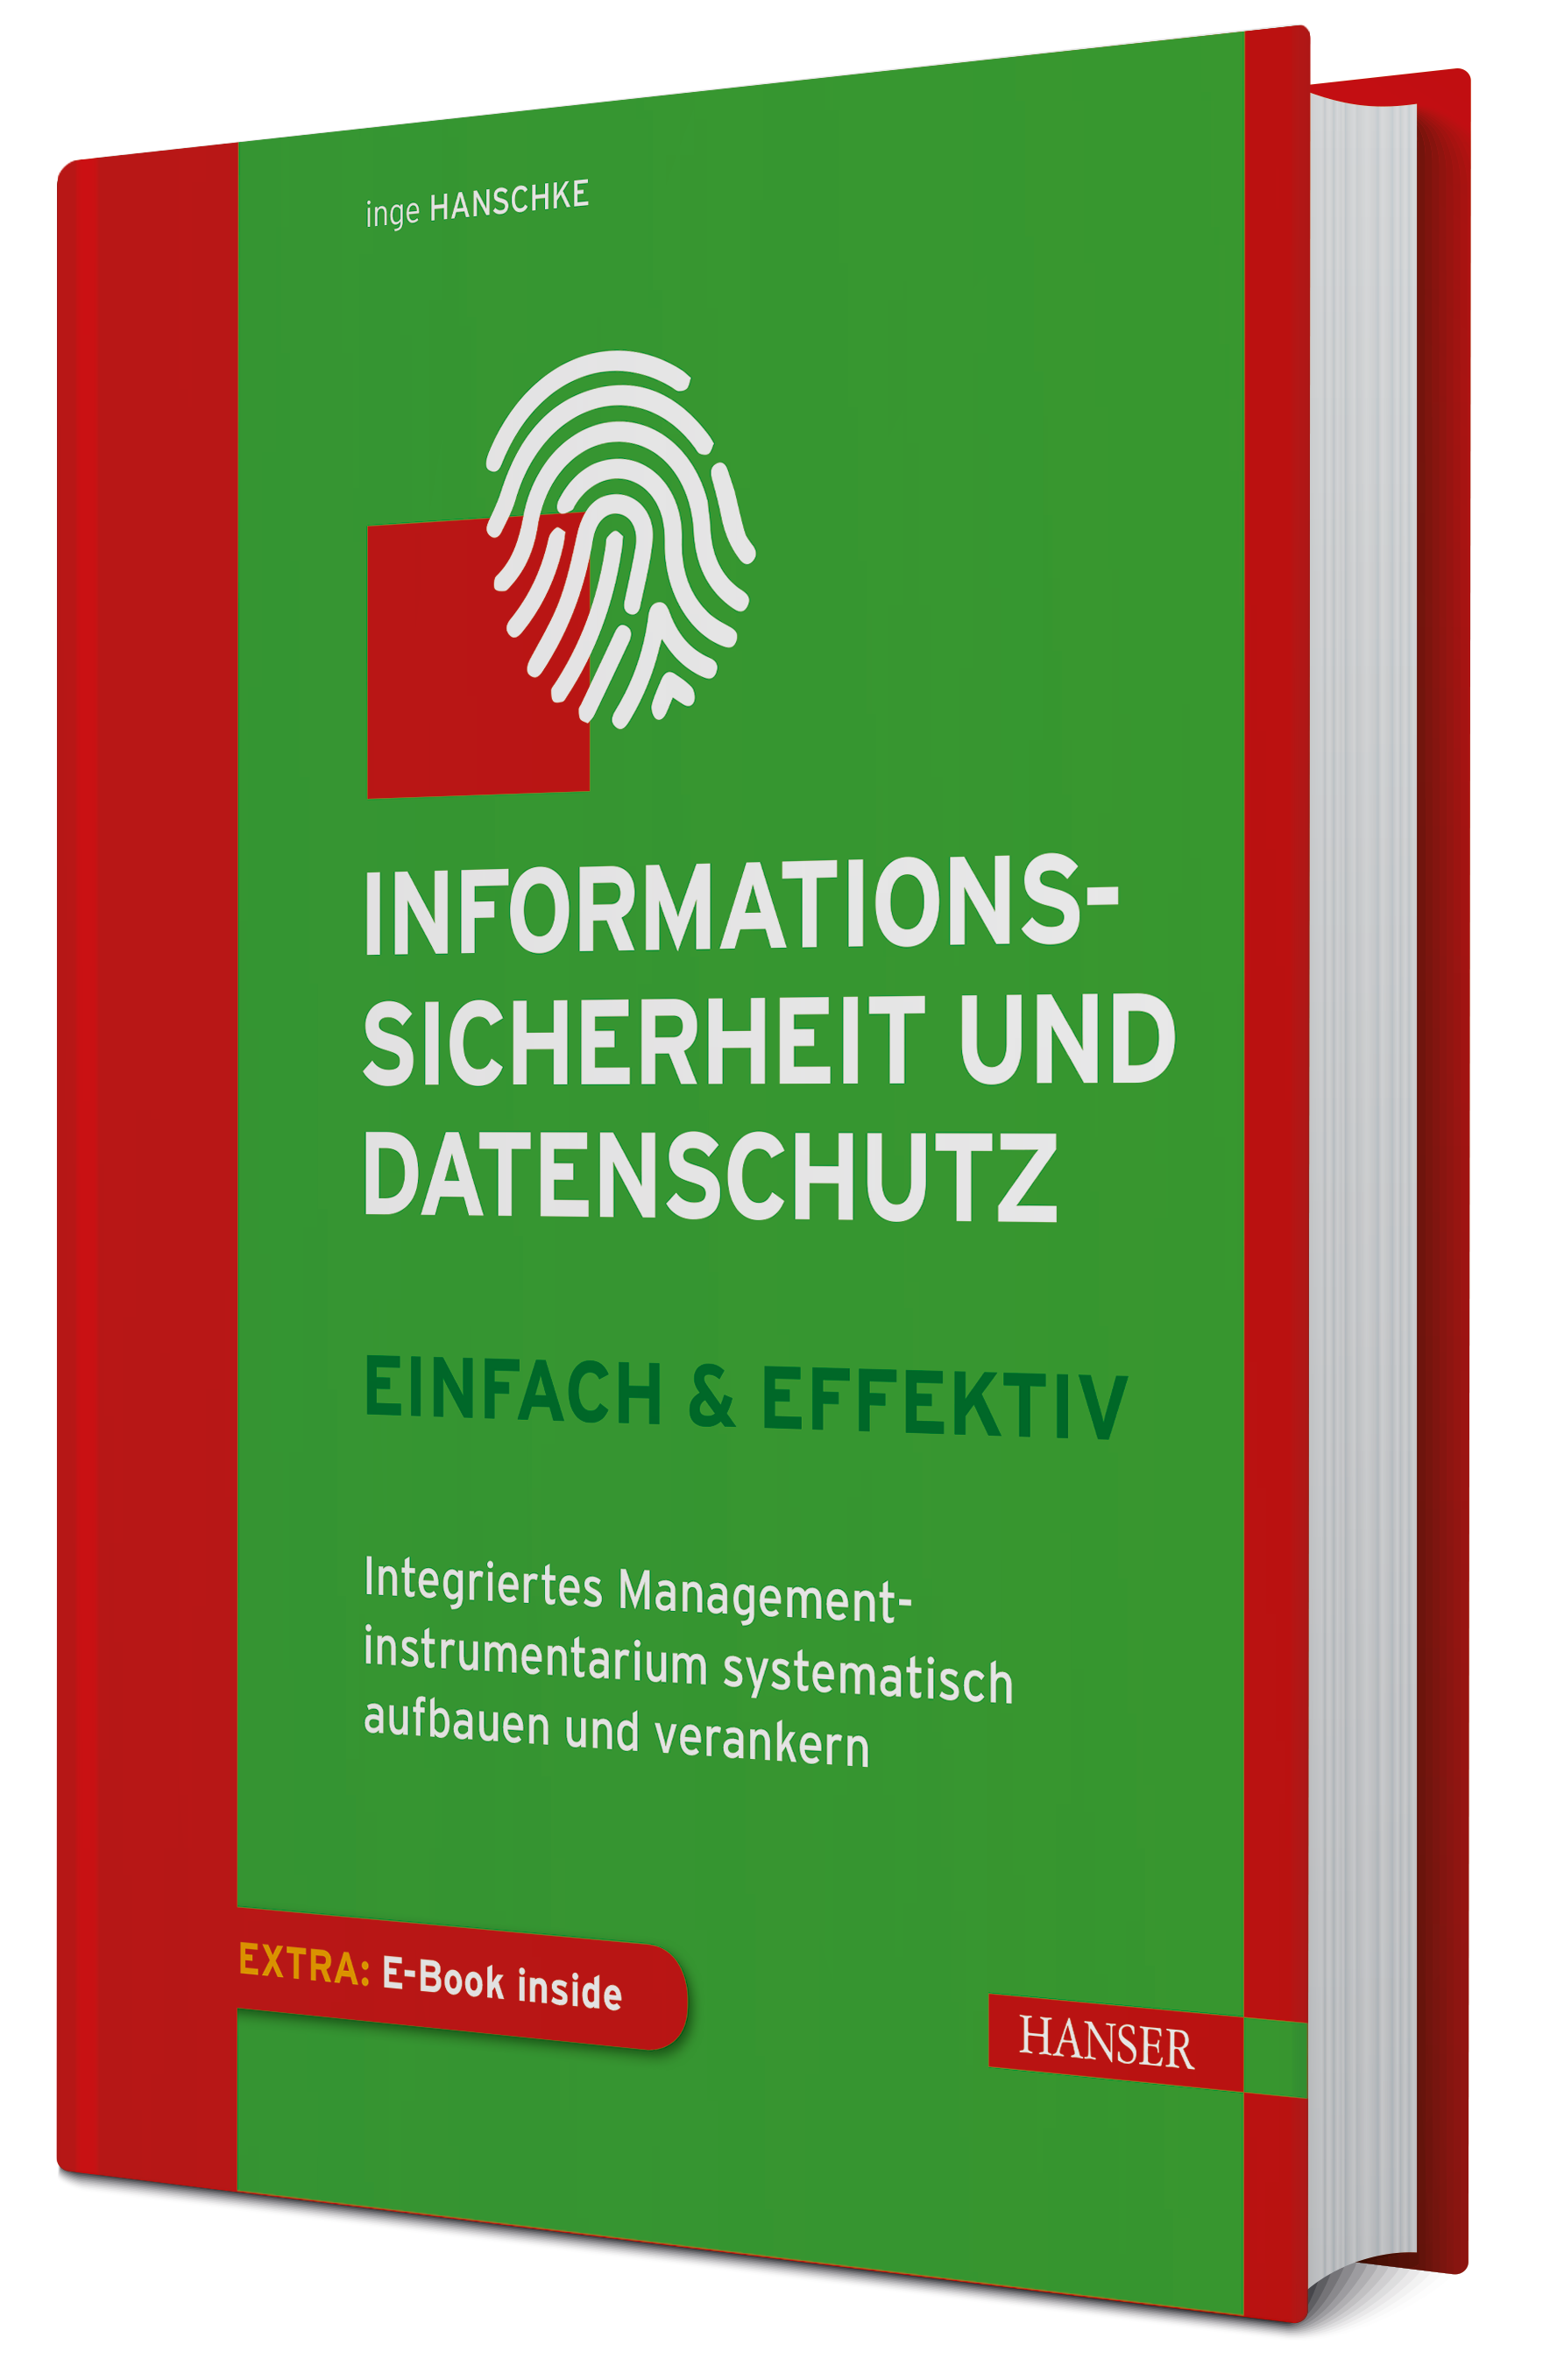 Inge Hanschke "Informationssicherheit und Datenschutz – einfach & effektiv" 11/2019,  217 Seiten, fester Einband © 2019 Carl Hanser Verlag GmbH & Co. KG